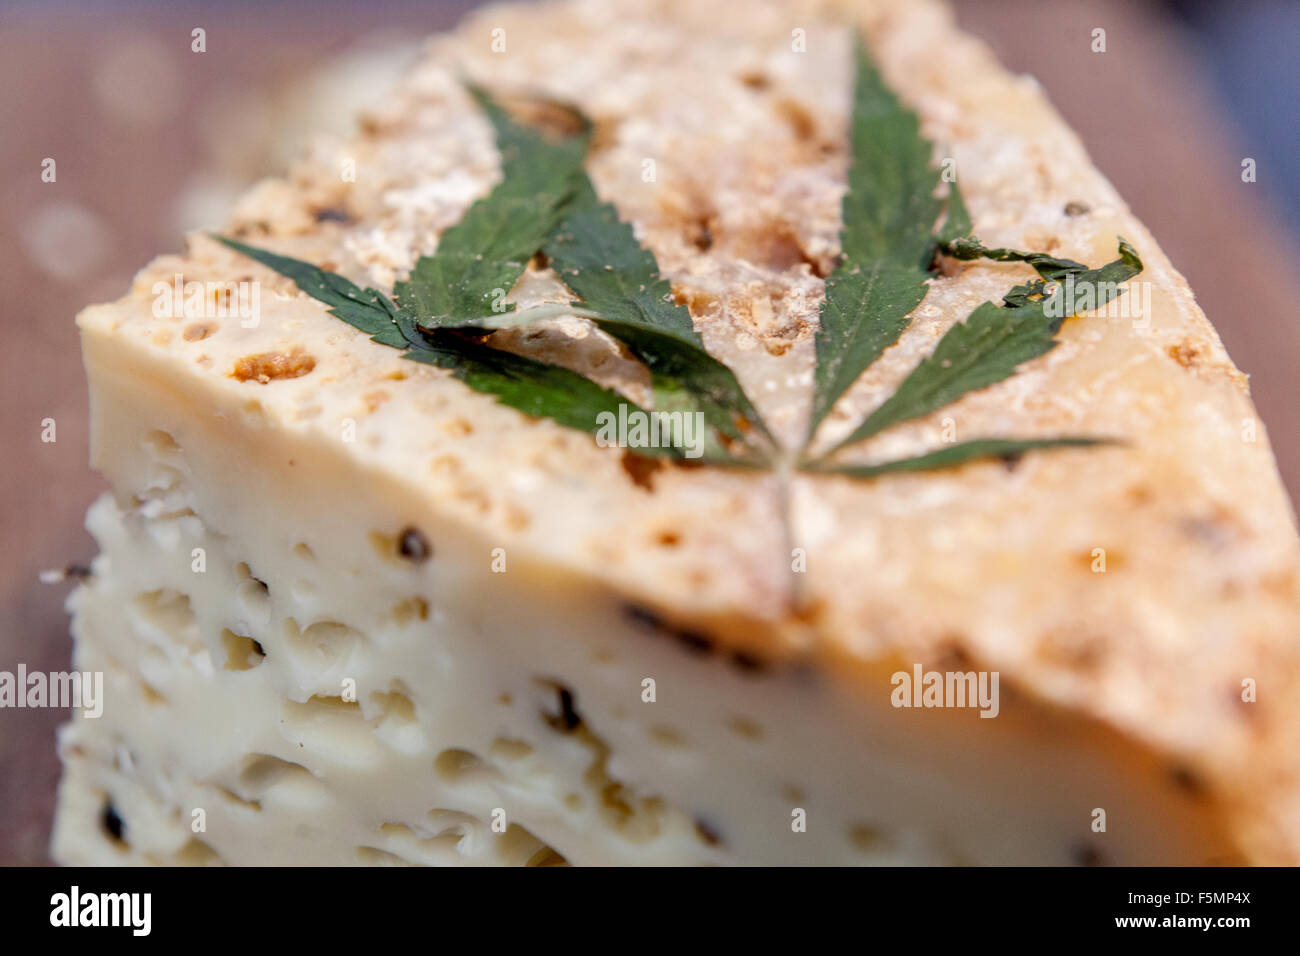 Fromage affiné chanvre feuille de cannabis herbe alimentaire comestible Banque D'Images